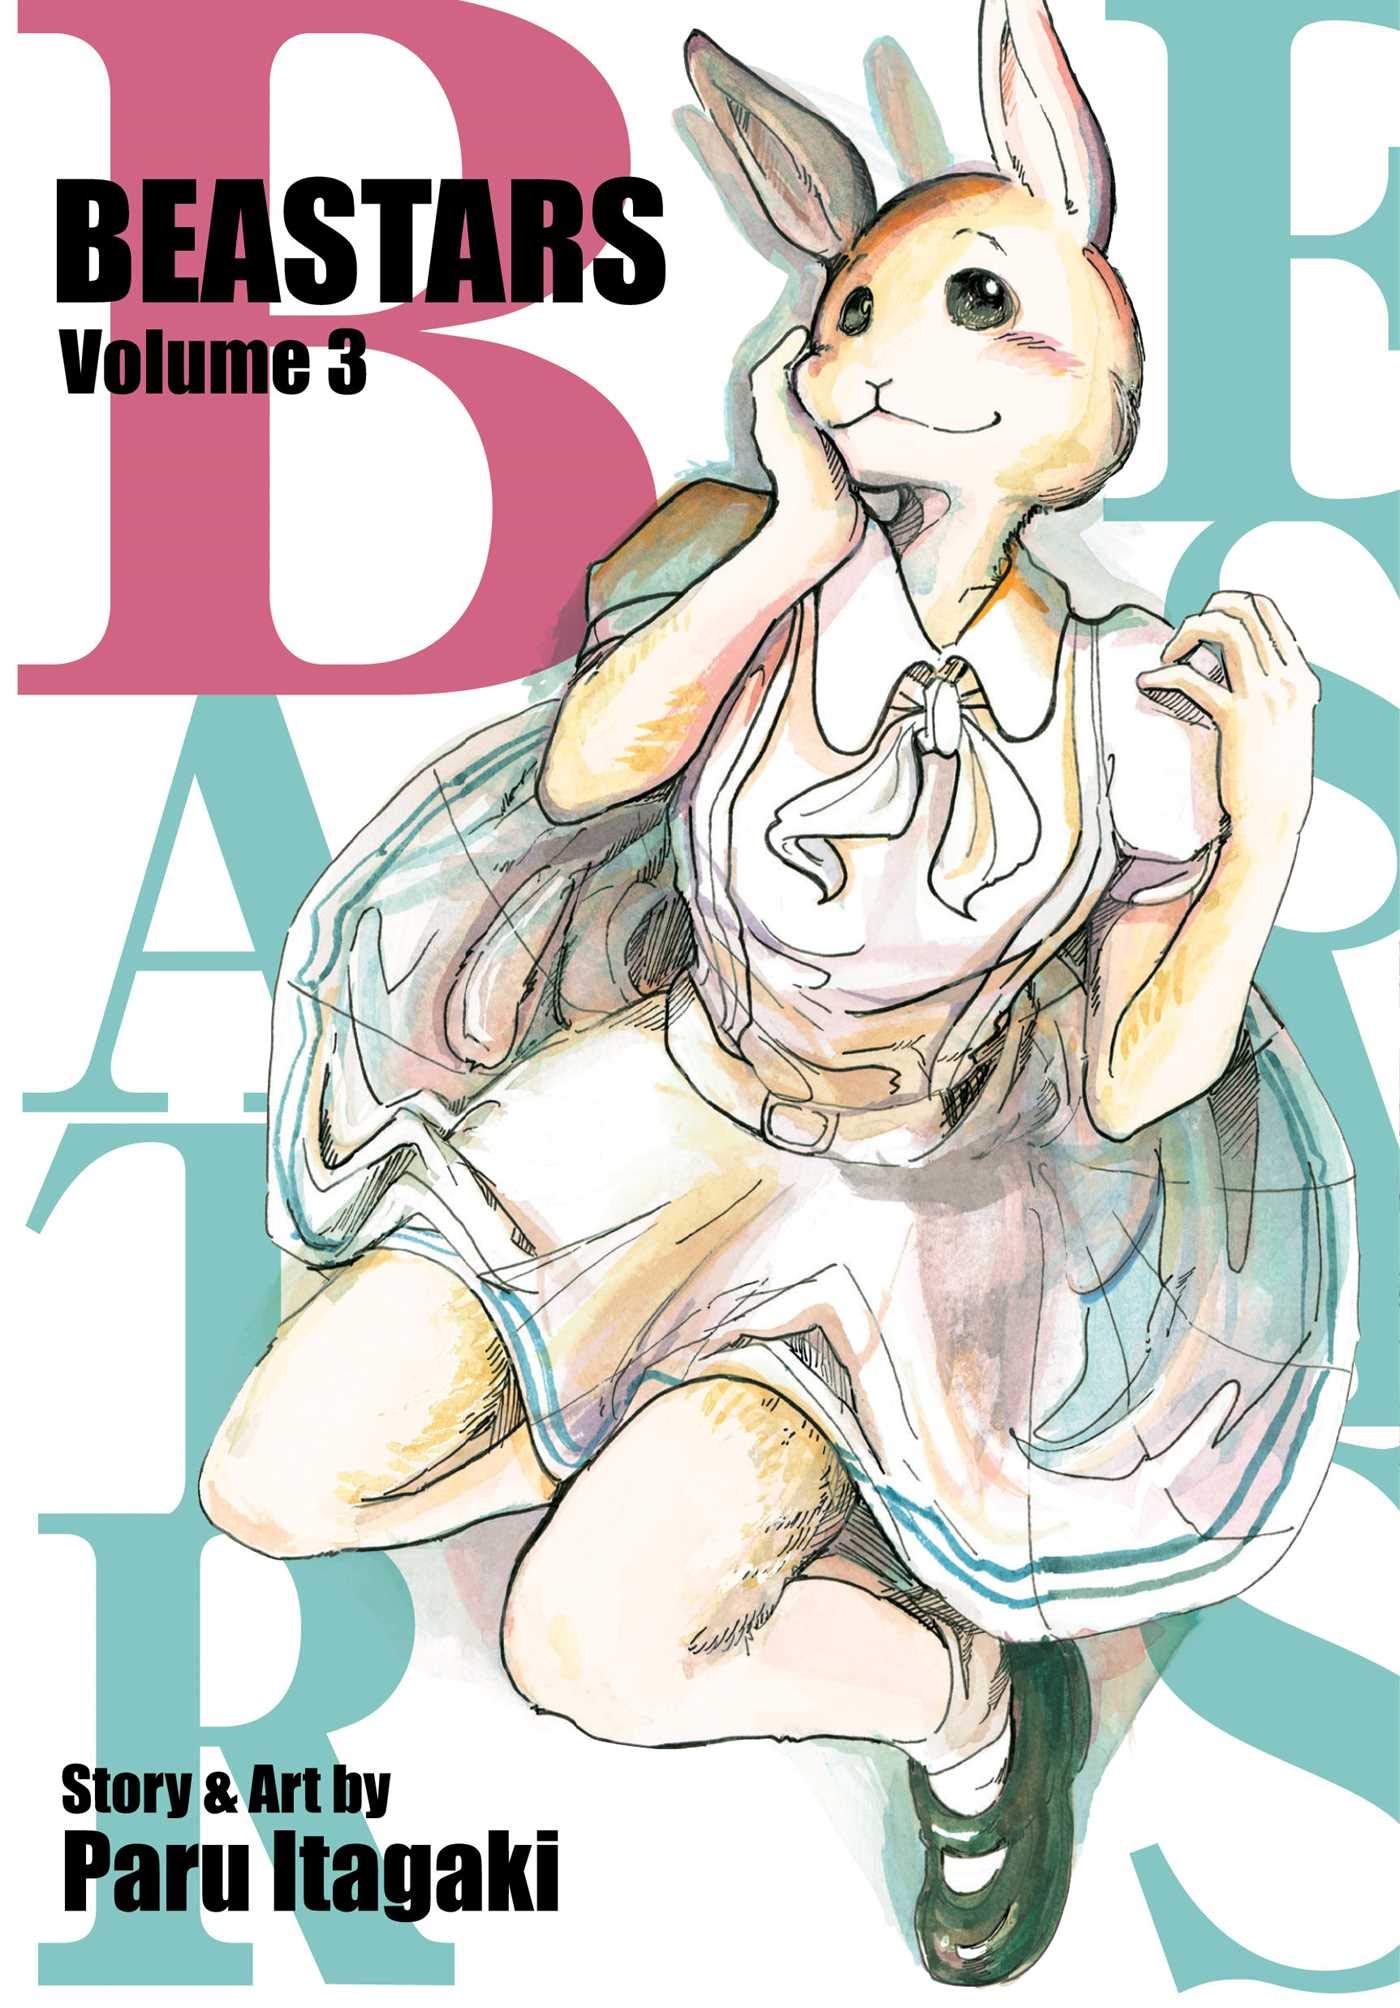 Beastars - Volume 3 | Paru Itagaki image0